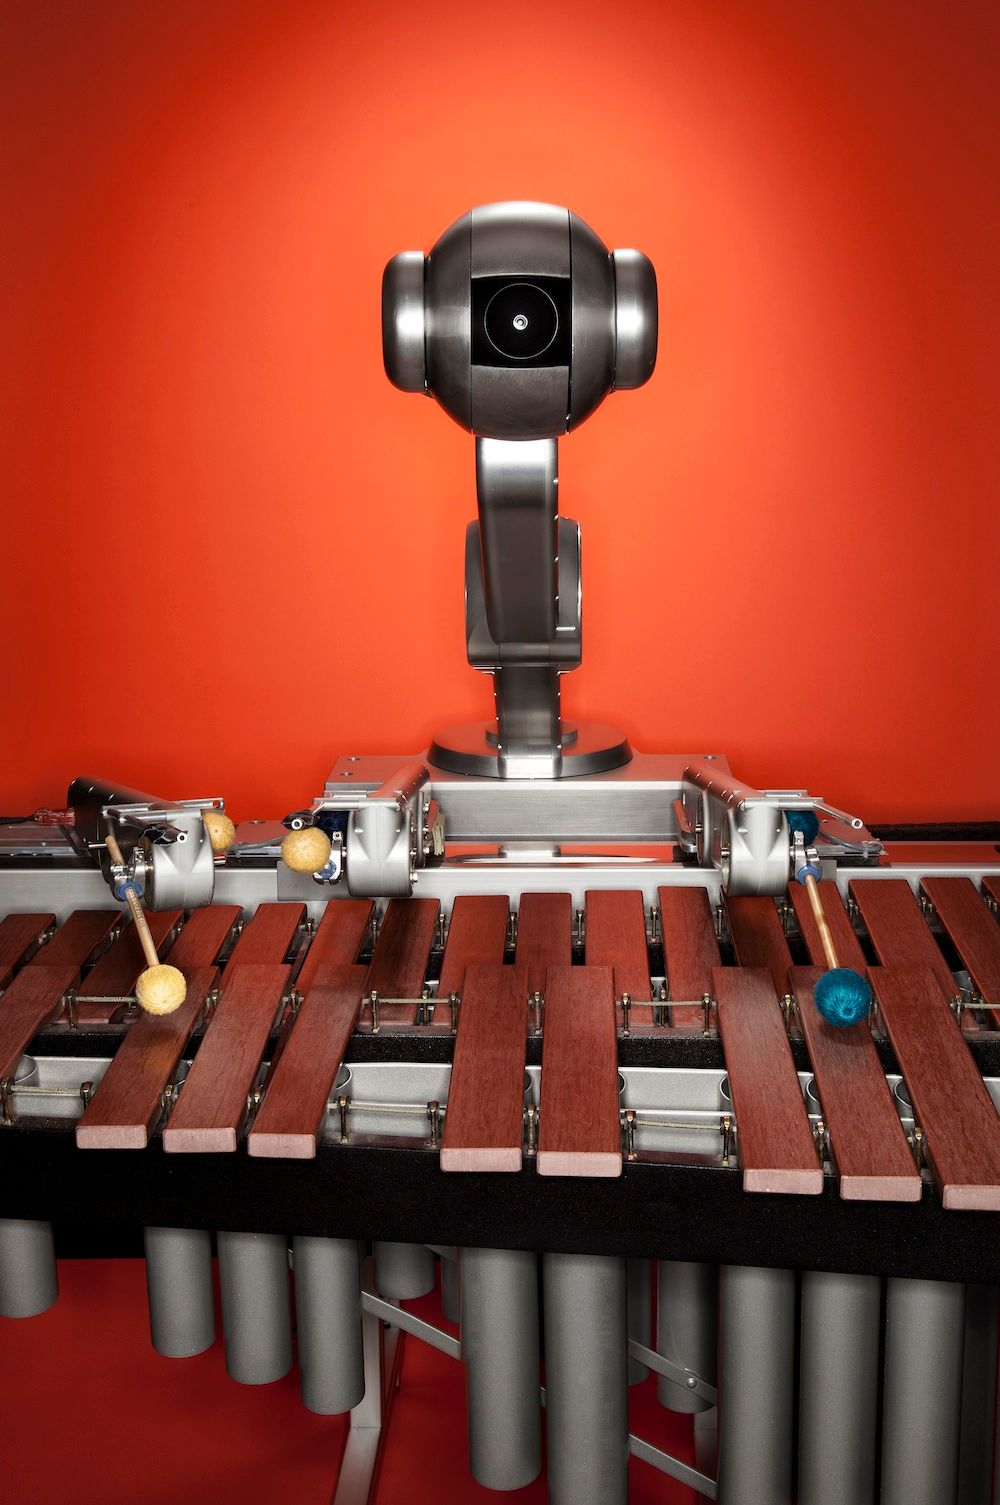 Ένα ρομπότ γίνεται μέλος τζαζ μπάντας σε μια διαφορετική συναυλία στο Μέγαρο Μουσικής Αθηνών 11